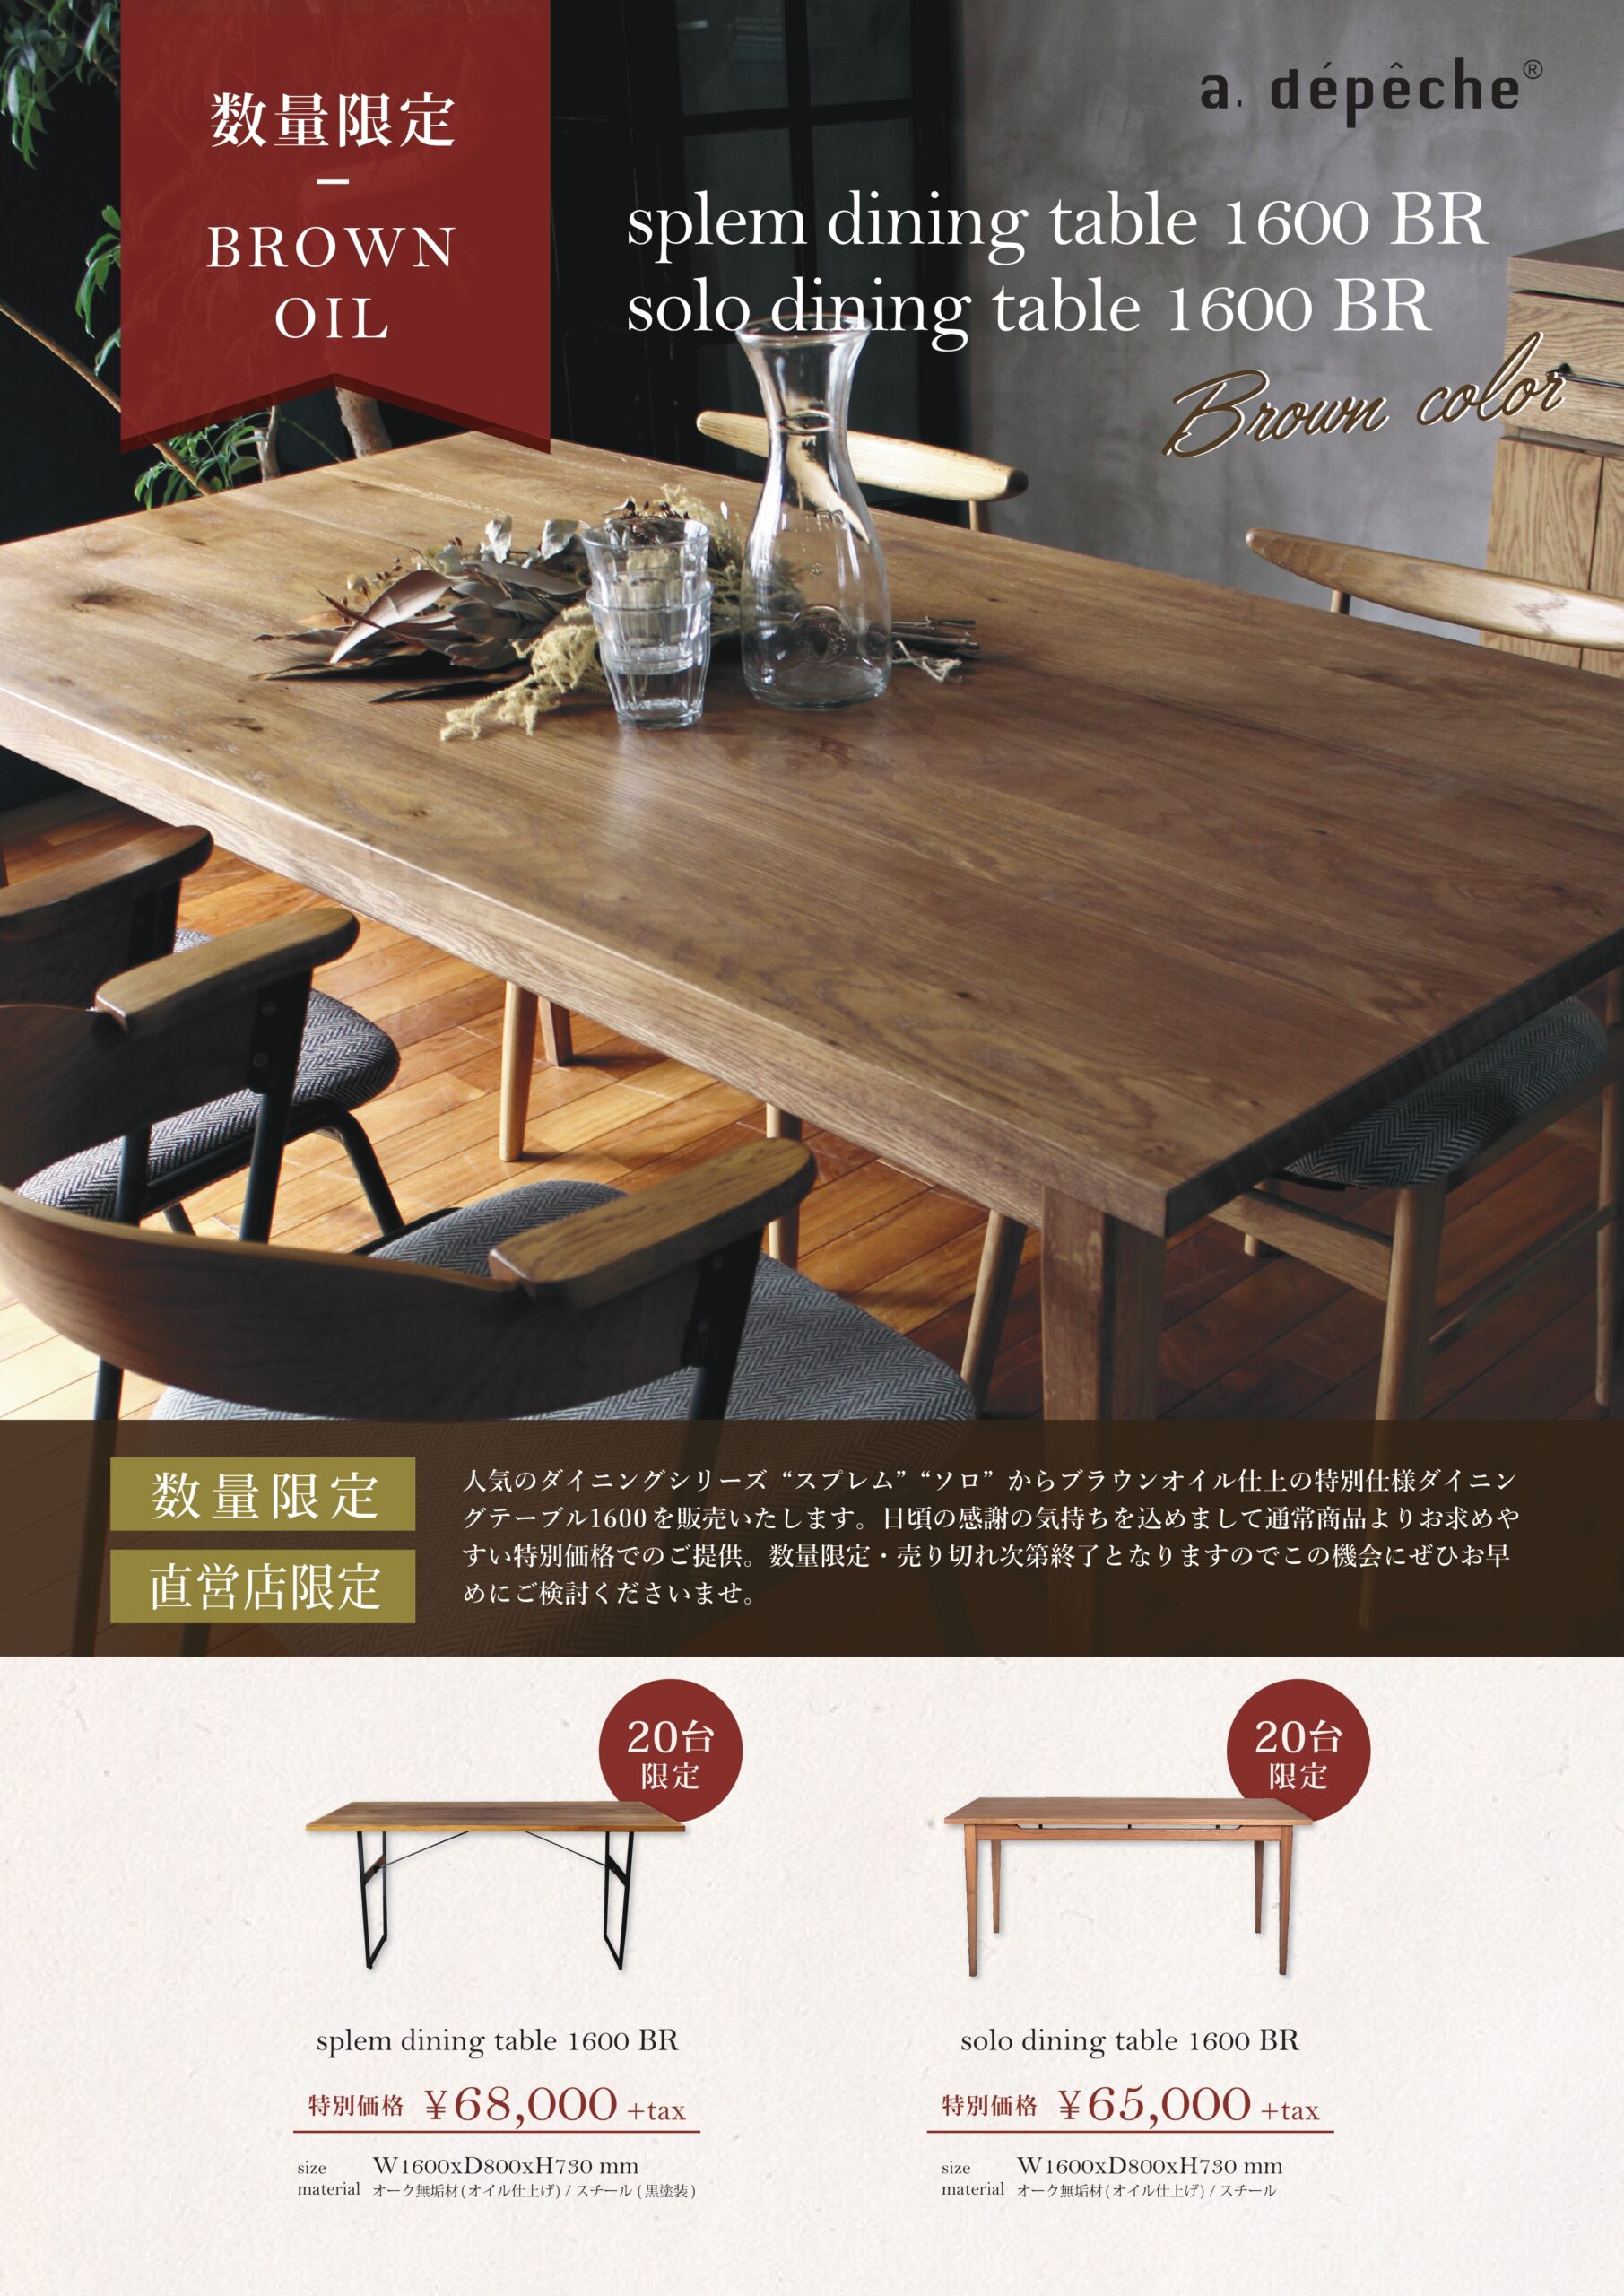 アデペシュ ダイニングテーブル - 愛知県の家具